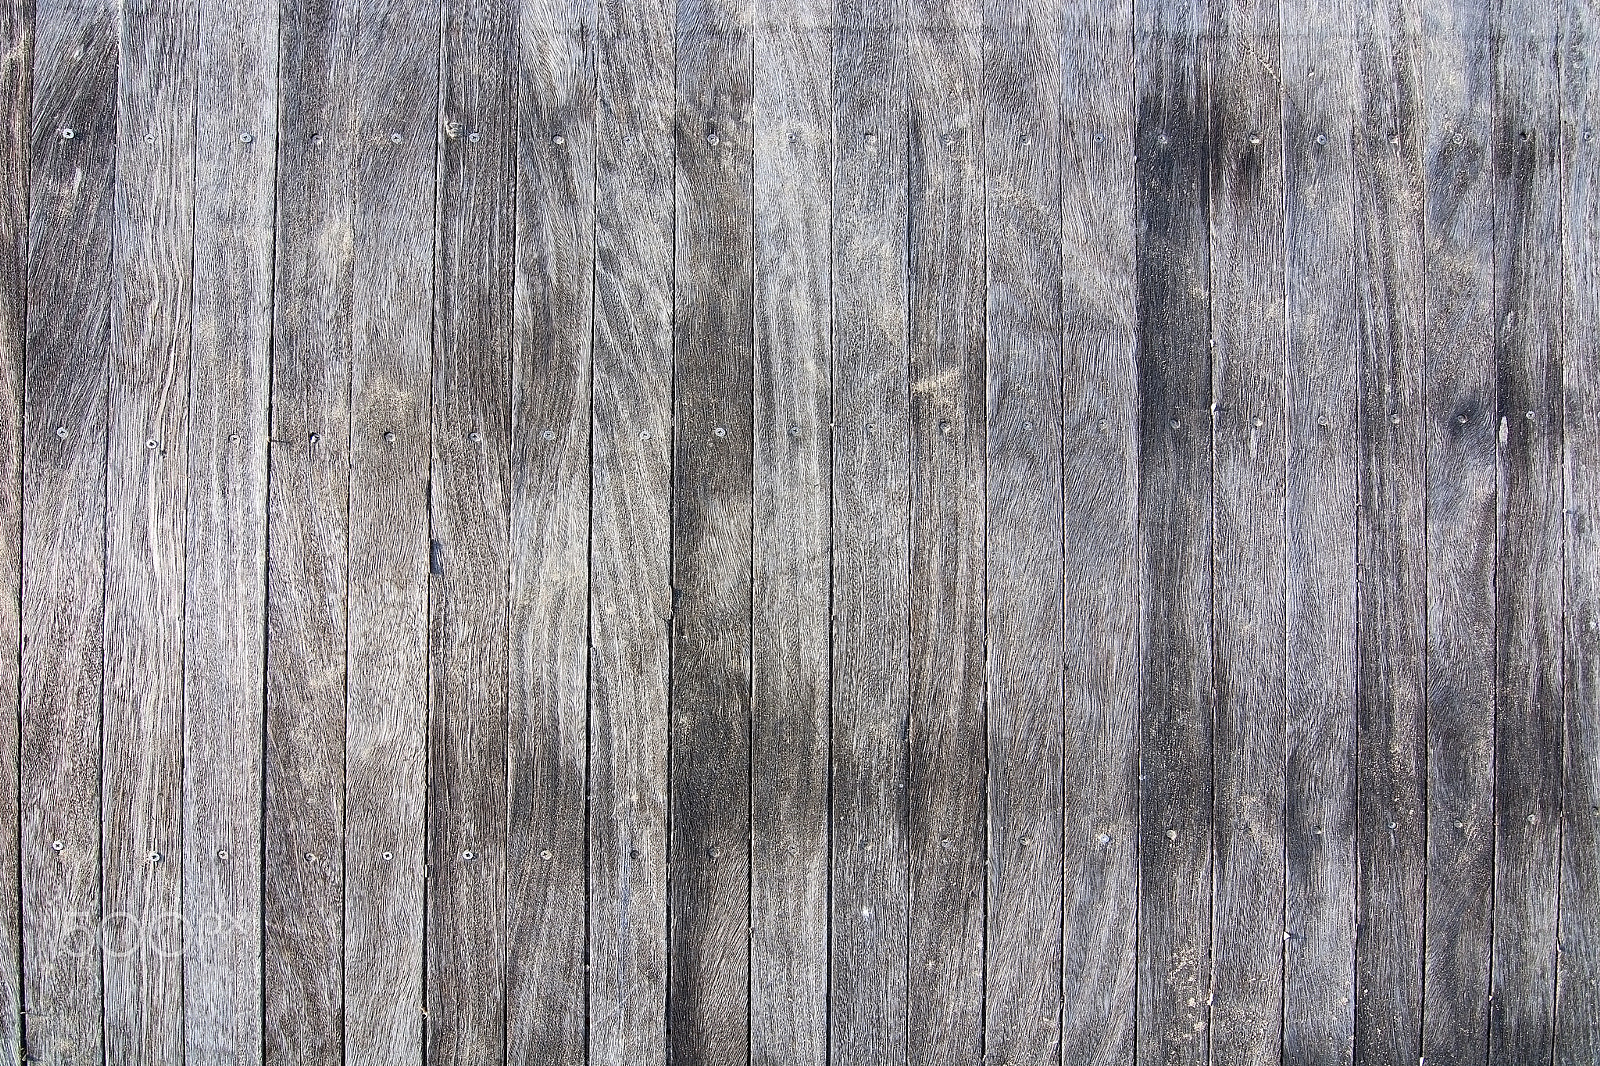 Nikon D7100 + AF Zoom-Nikkor 28-70mm f/3.5-4.5D sample photo. Brown weathered boardwalk planks background photography